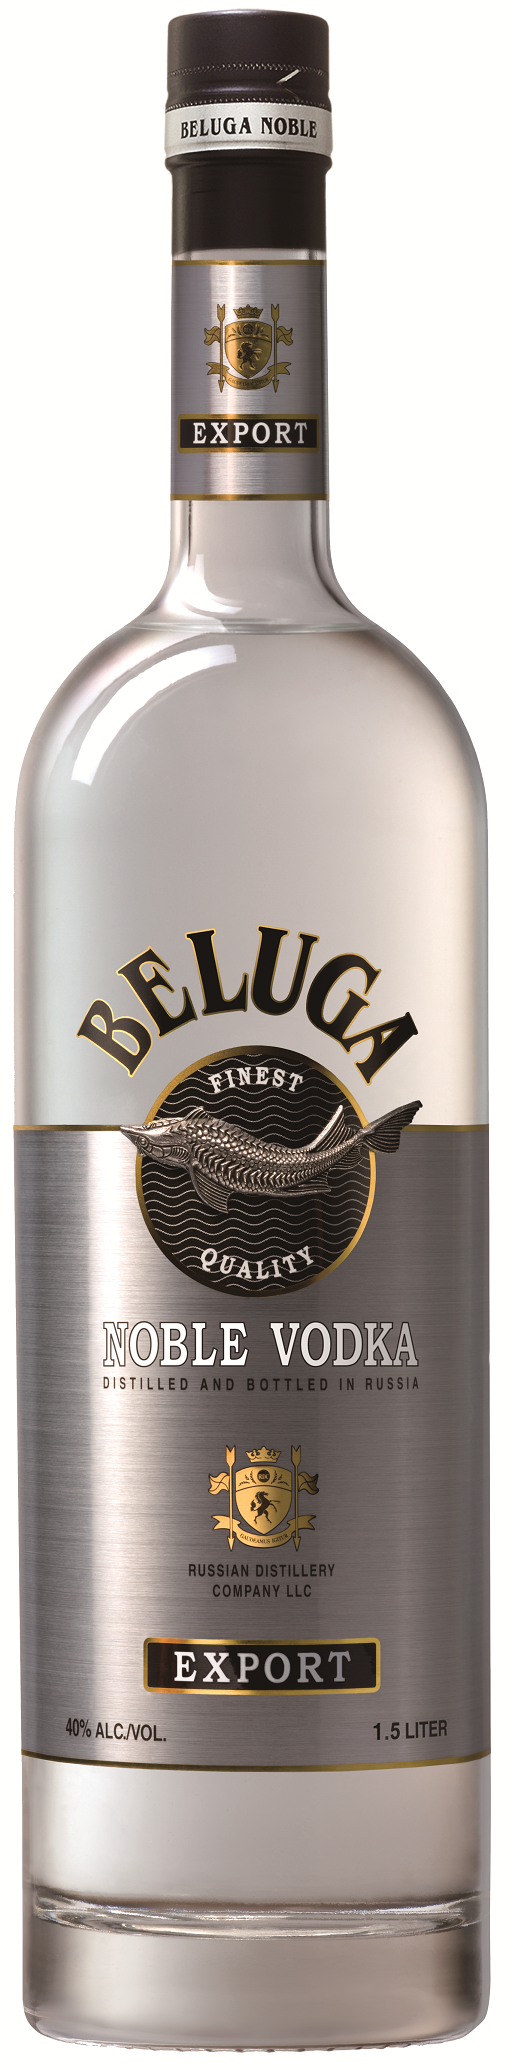 Beluga Noble Vodka 1,5 l